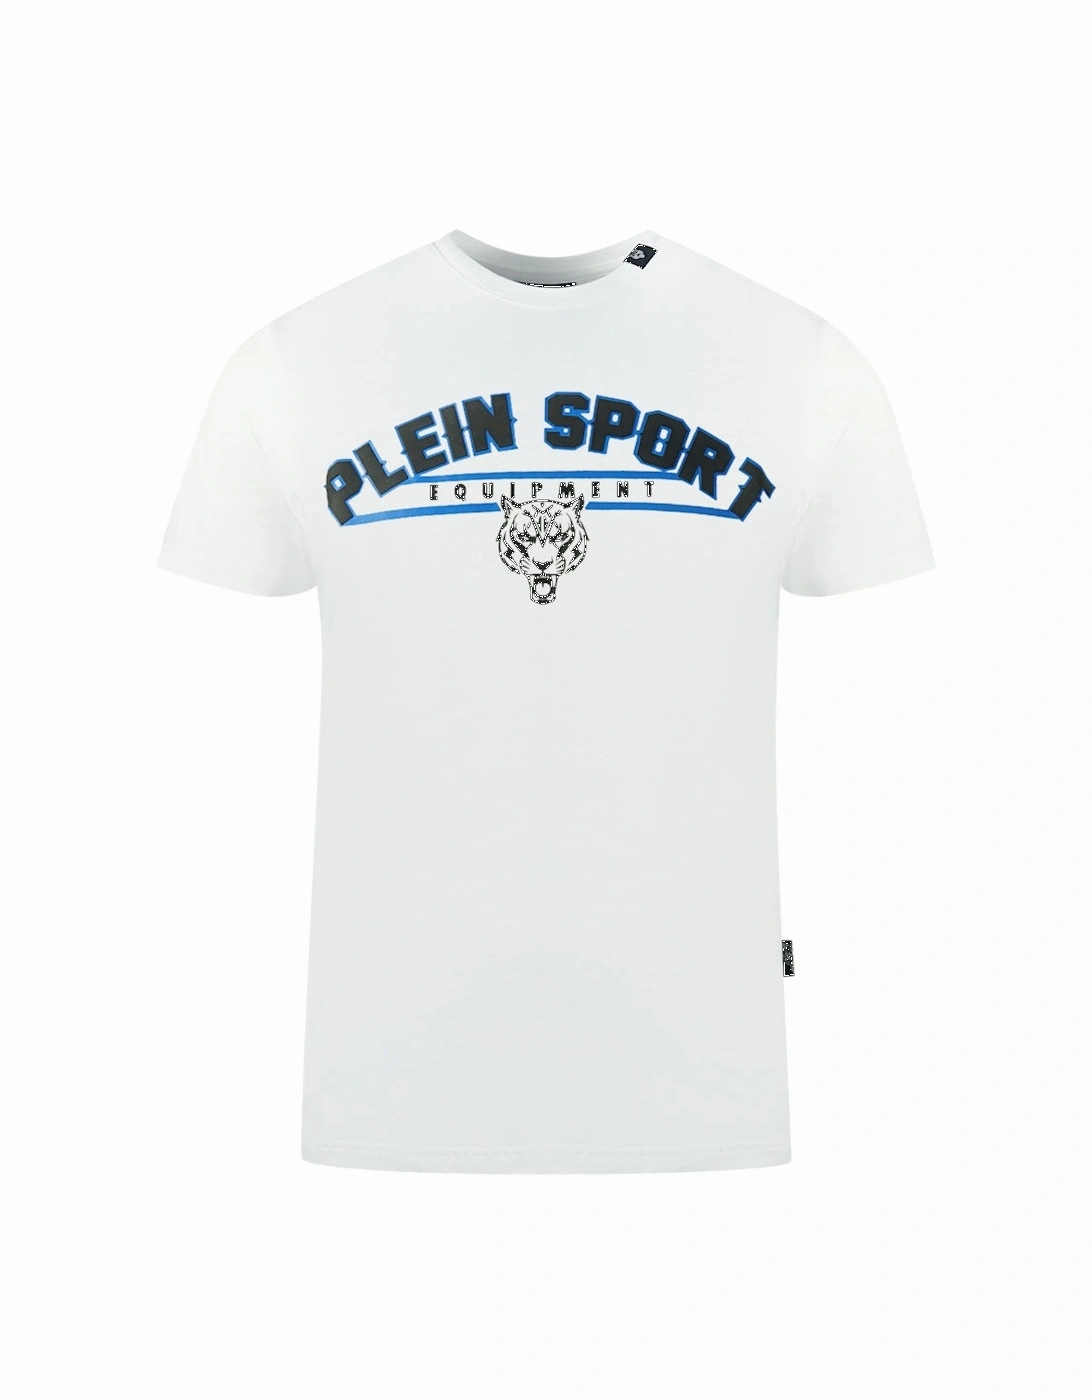 Plein Sport Equipment White T-Shirt, 3 of 2